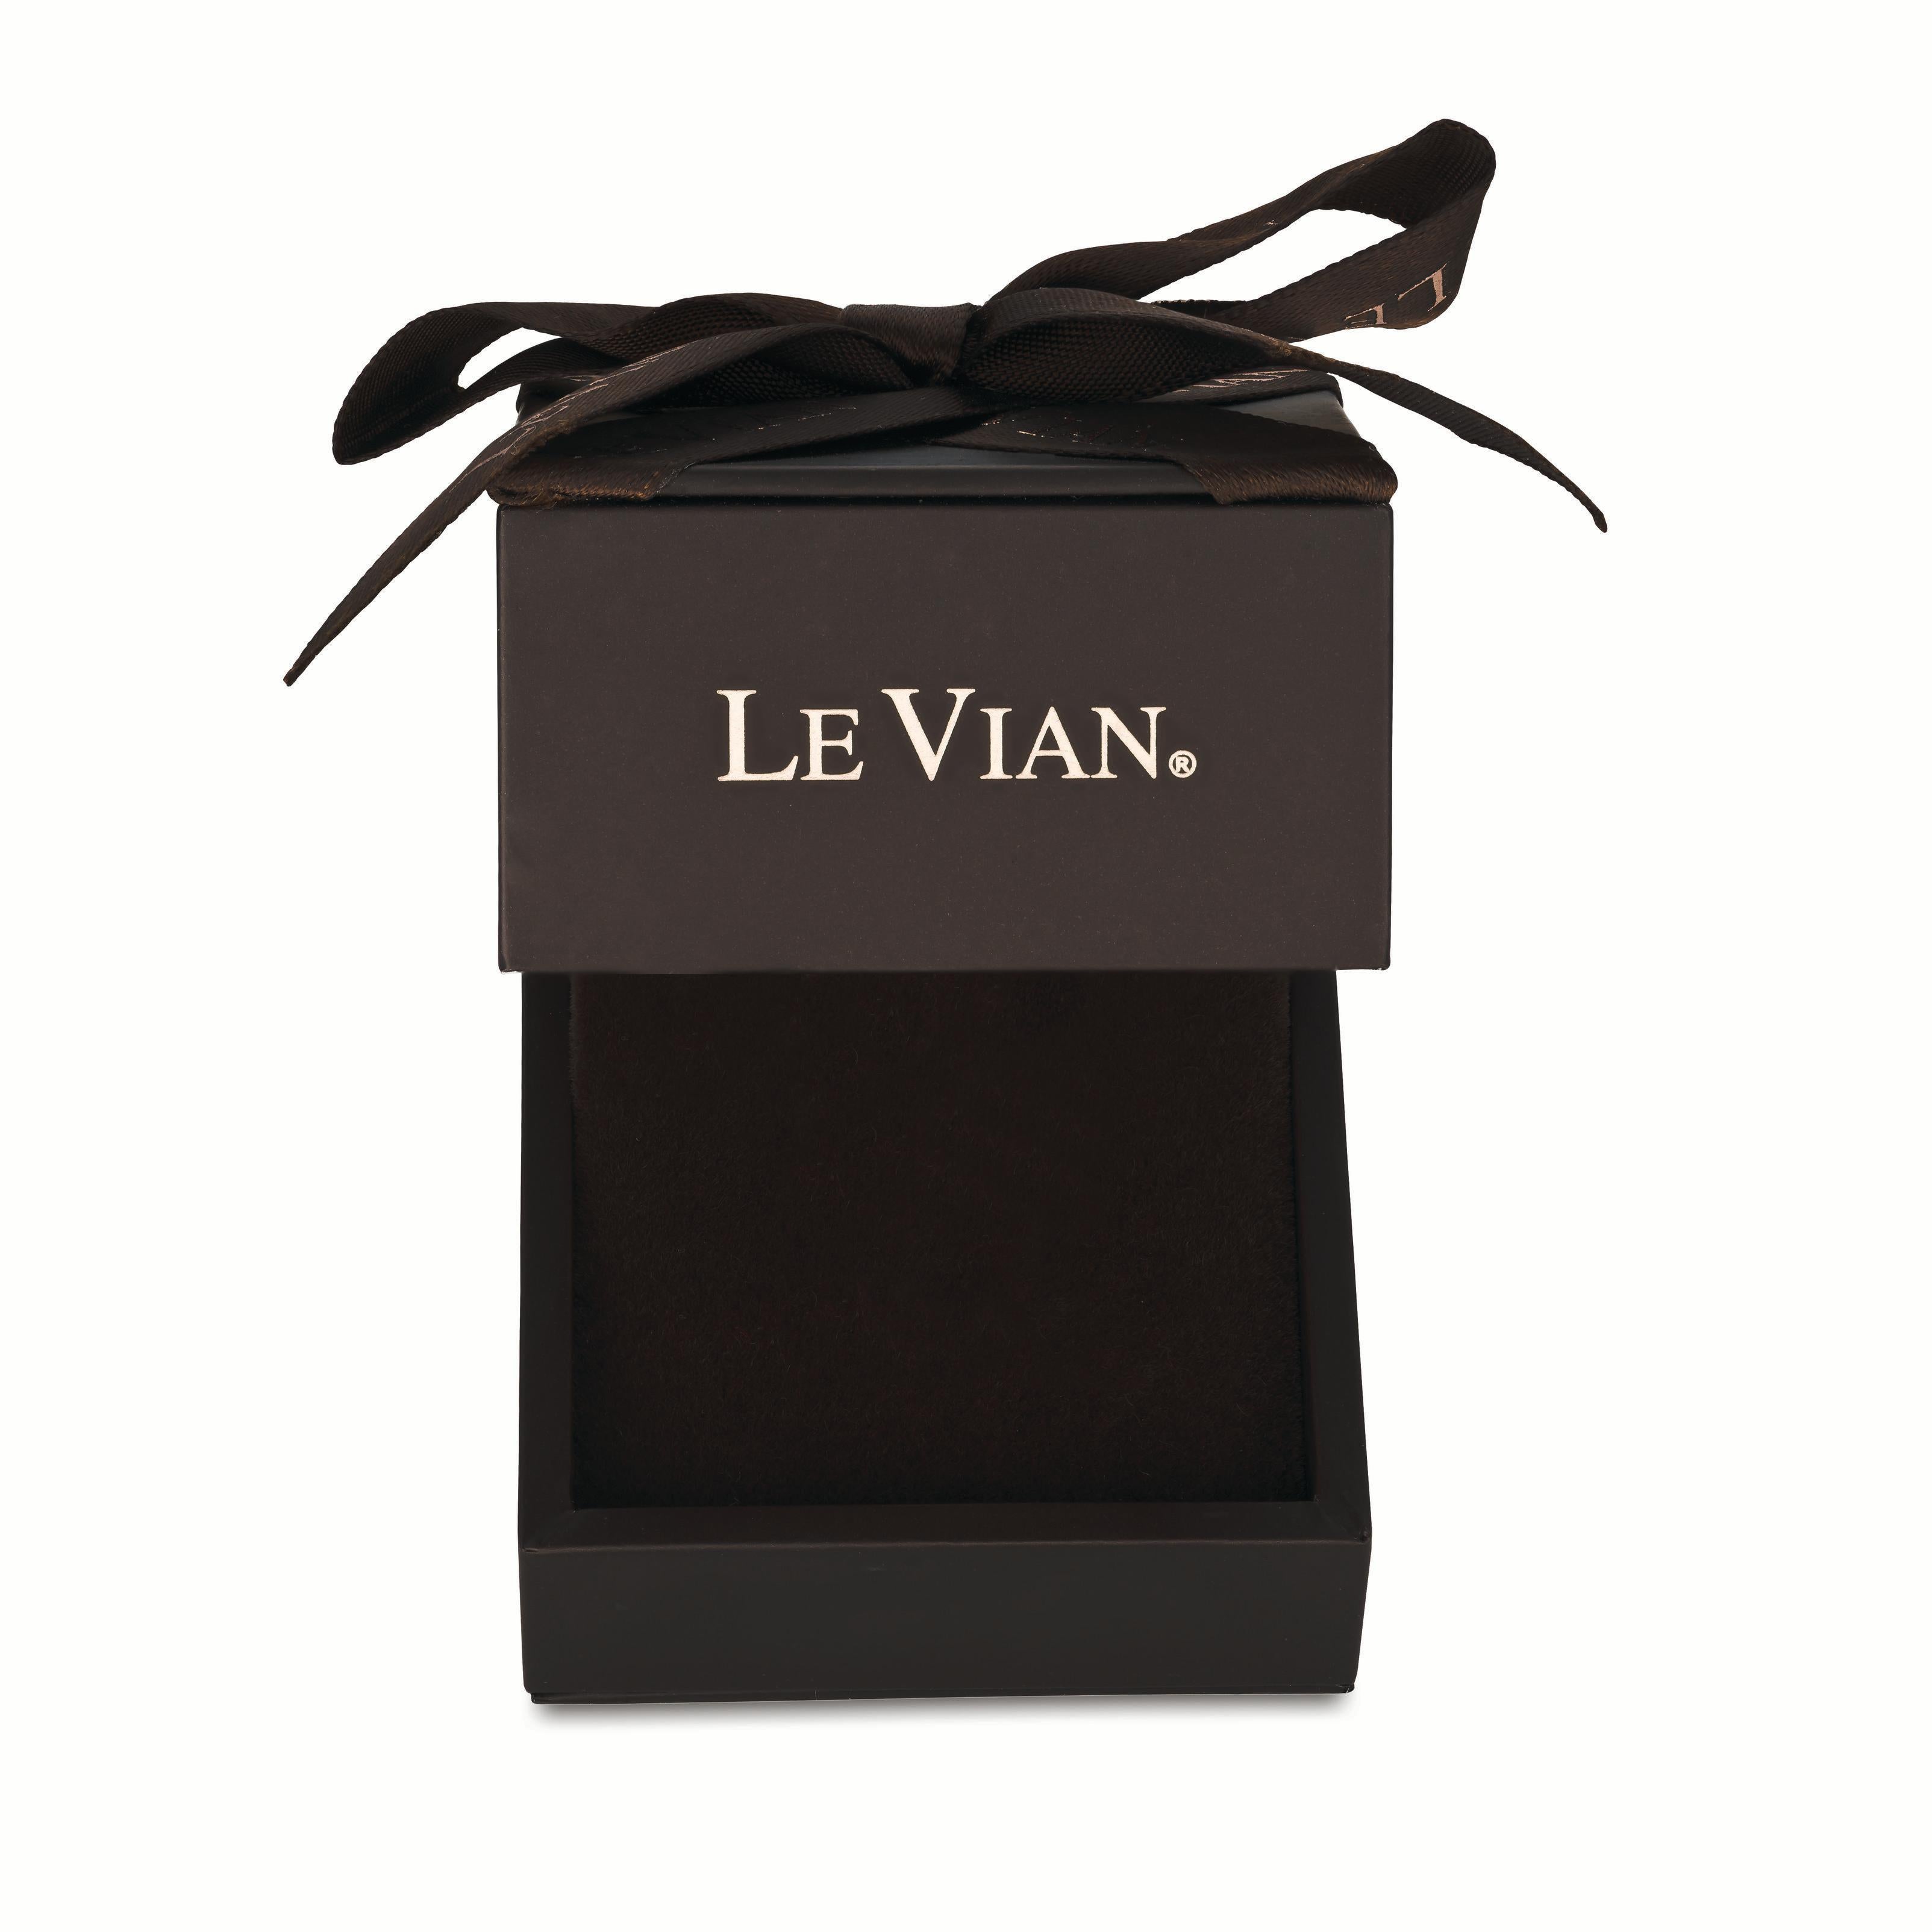 levian chocolate quartz